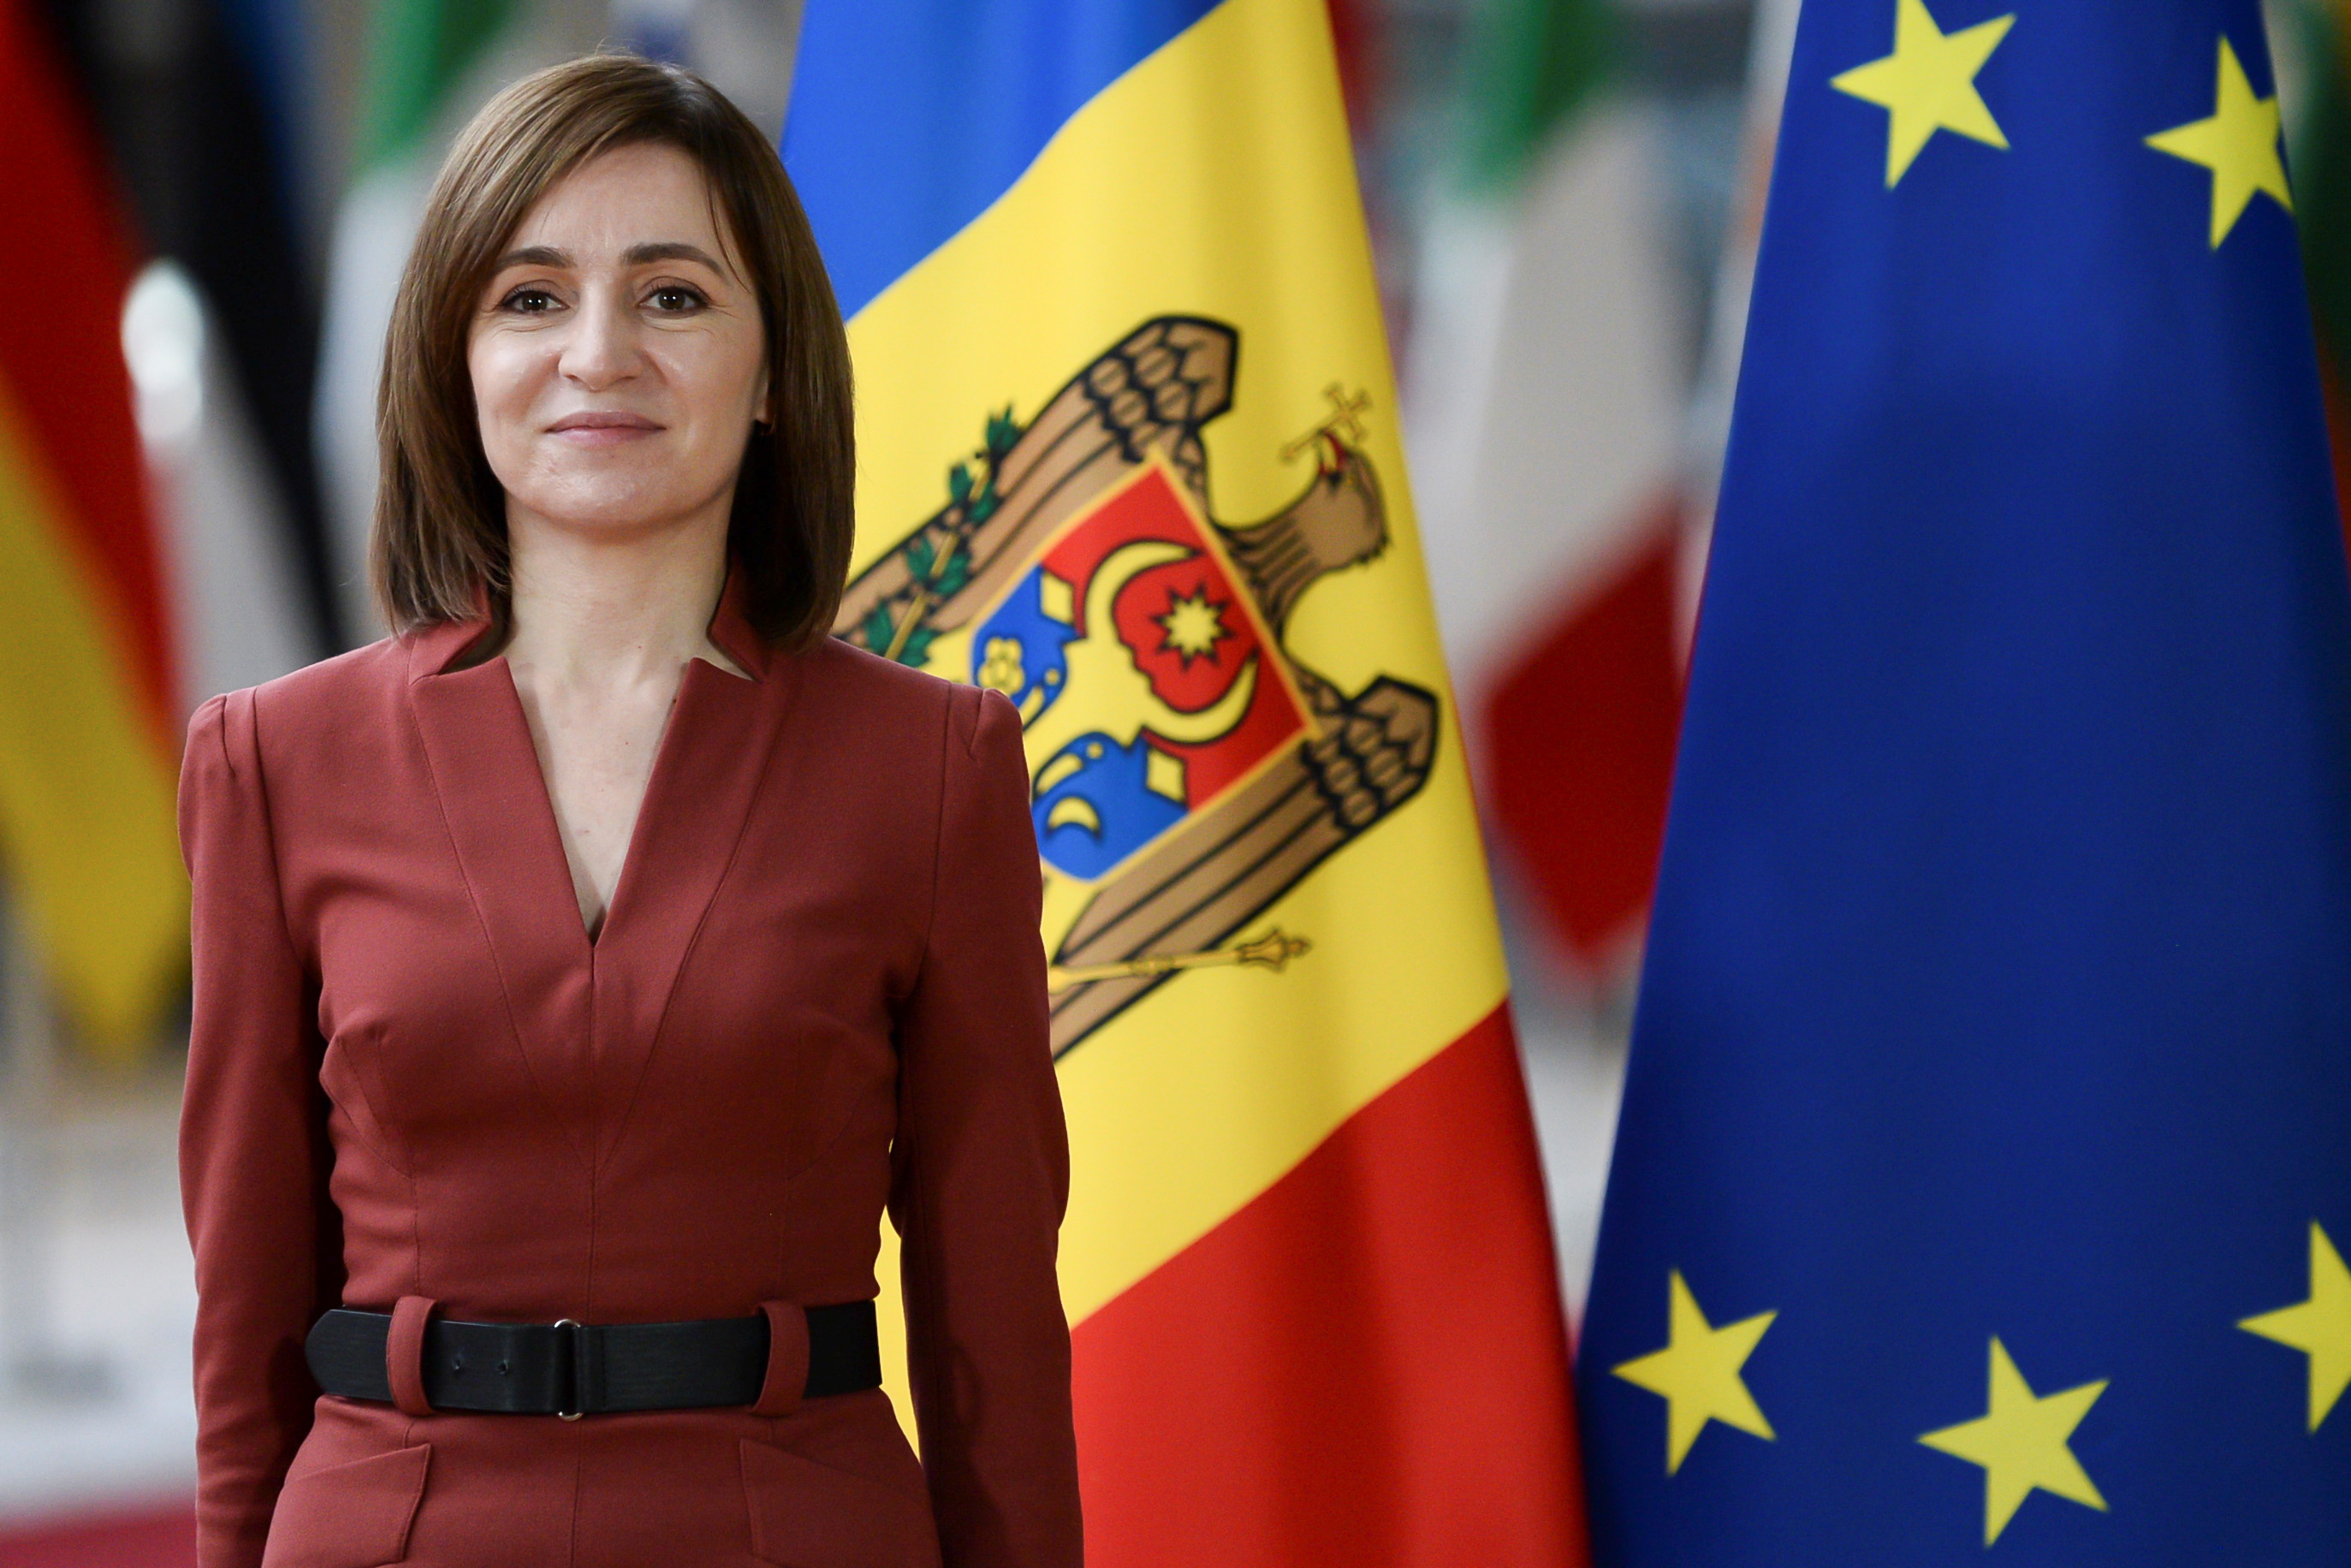 Maia Sandu pretende que su pais ingrese a la Unión Europea. Las tensiones en la región hacen temer que Moldavia sea la próxima víctima de Vladimir Putin.